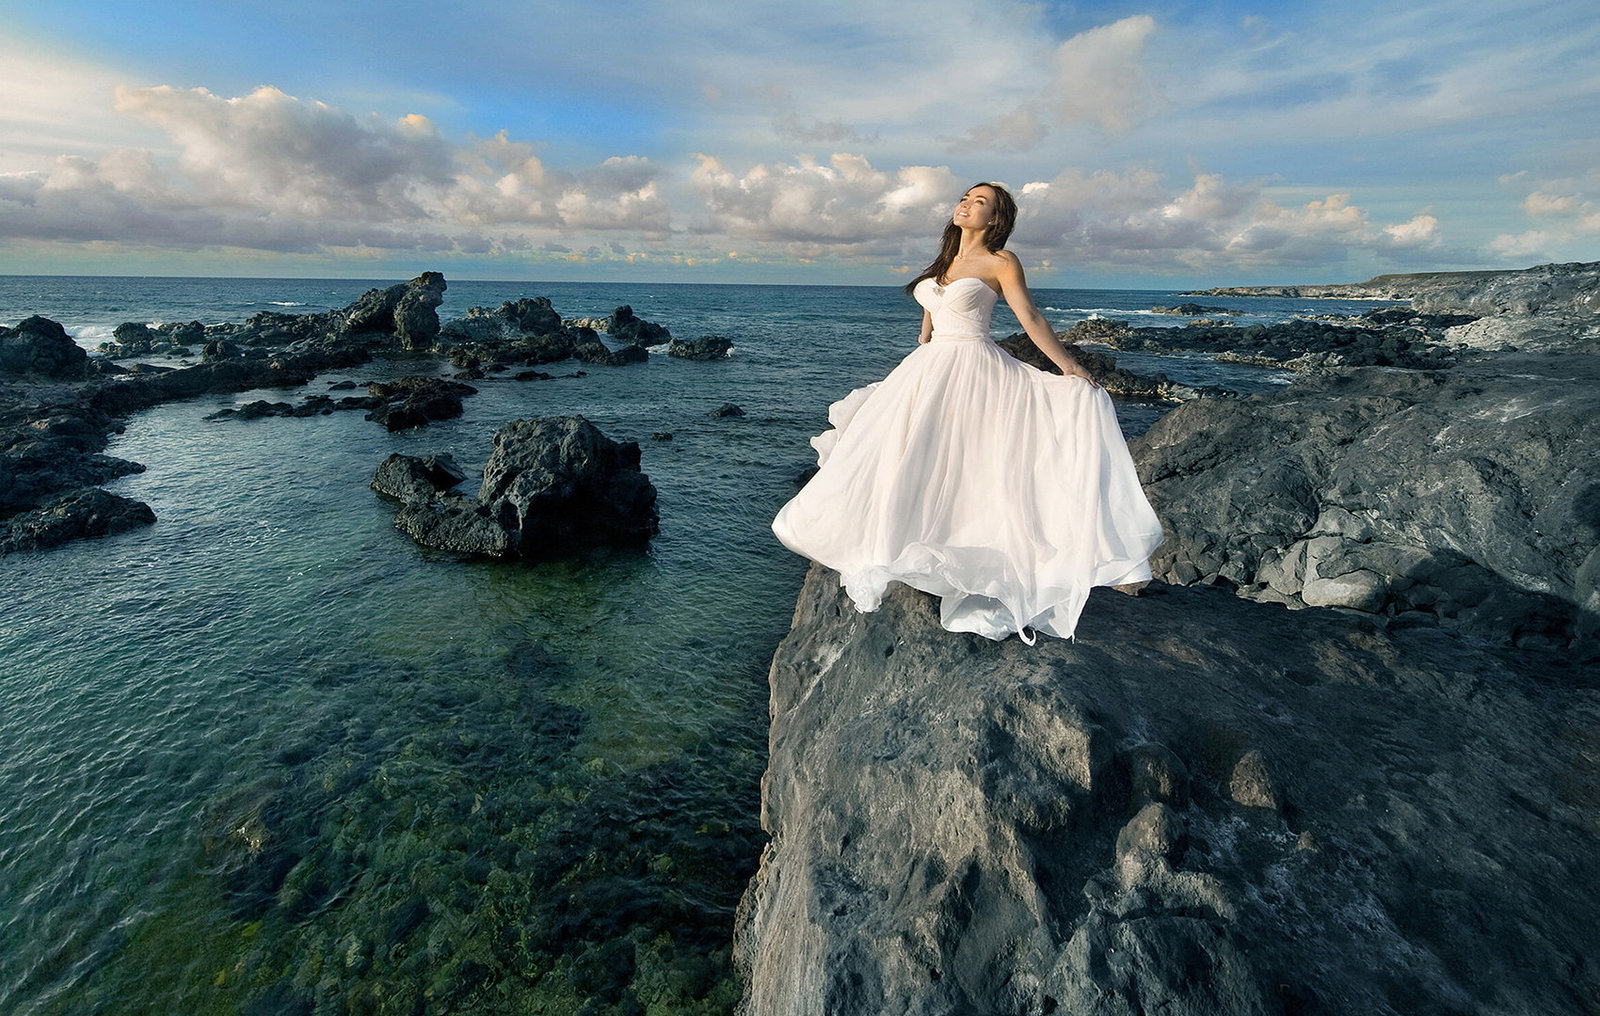 Best Prices for photographers | Cheapest photographers on Maui  | Kauai | Oahu | Big Island